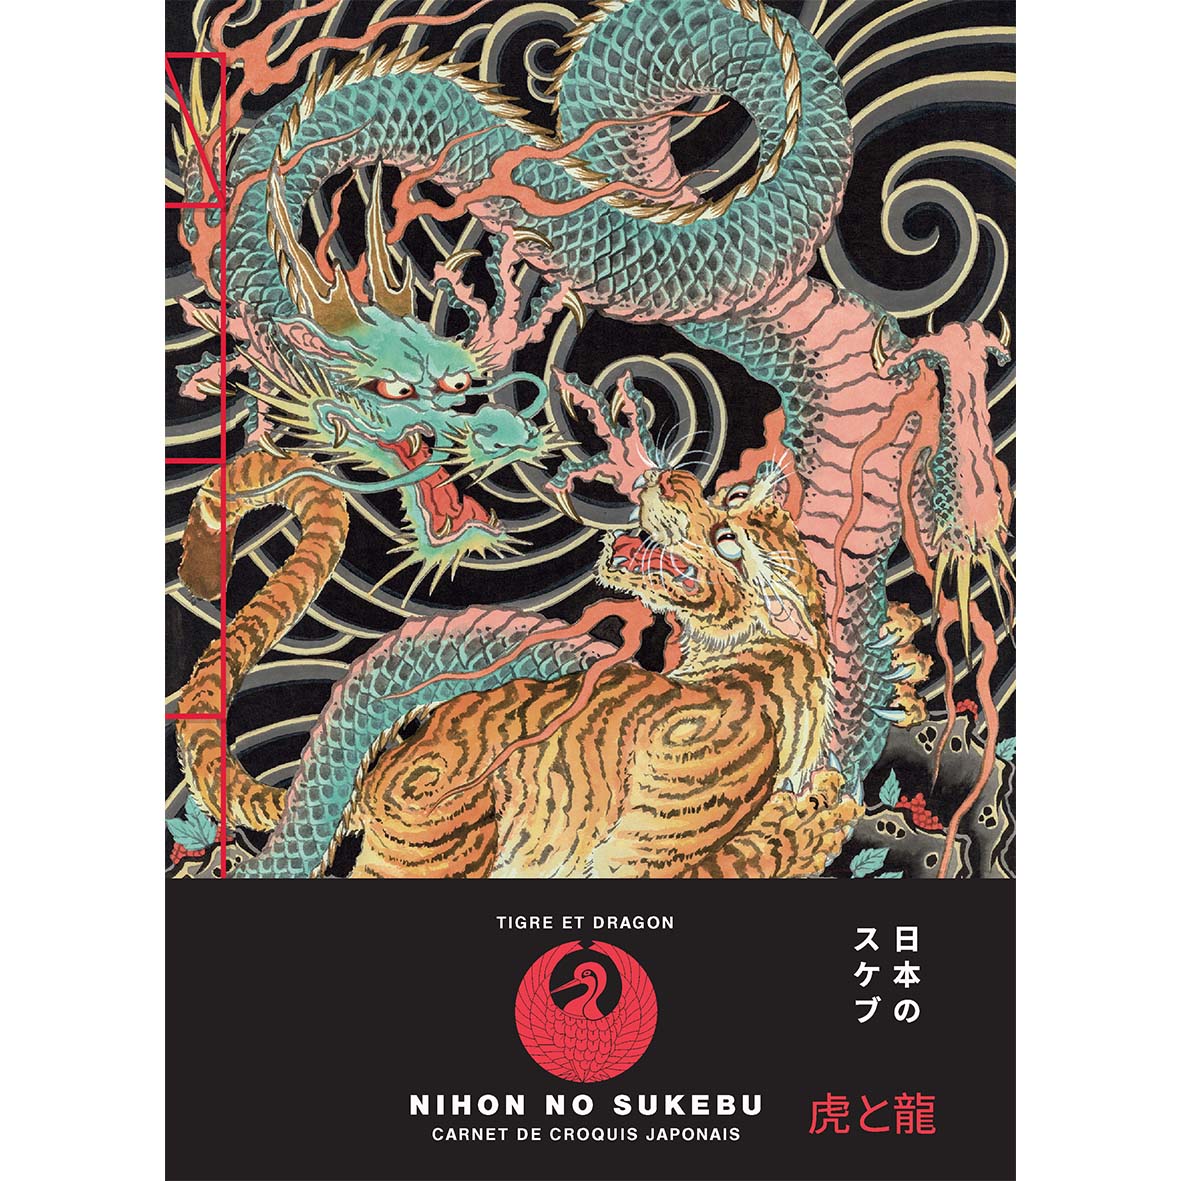 Carnets de croquis japonais - La tigre et le dragon